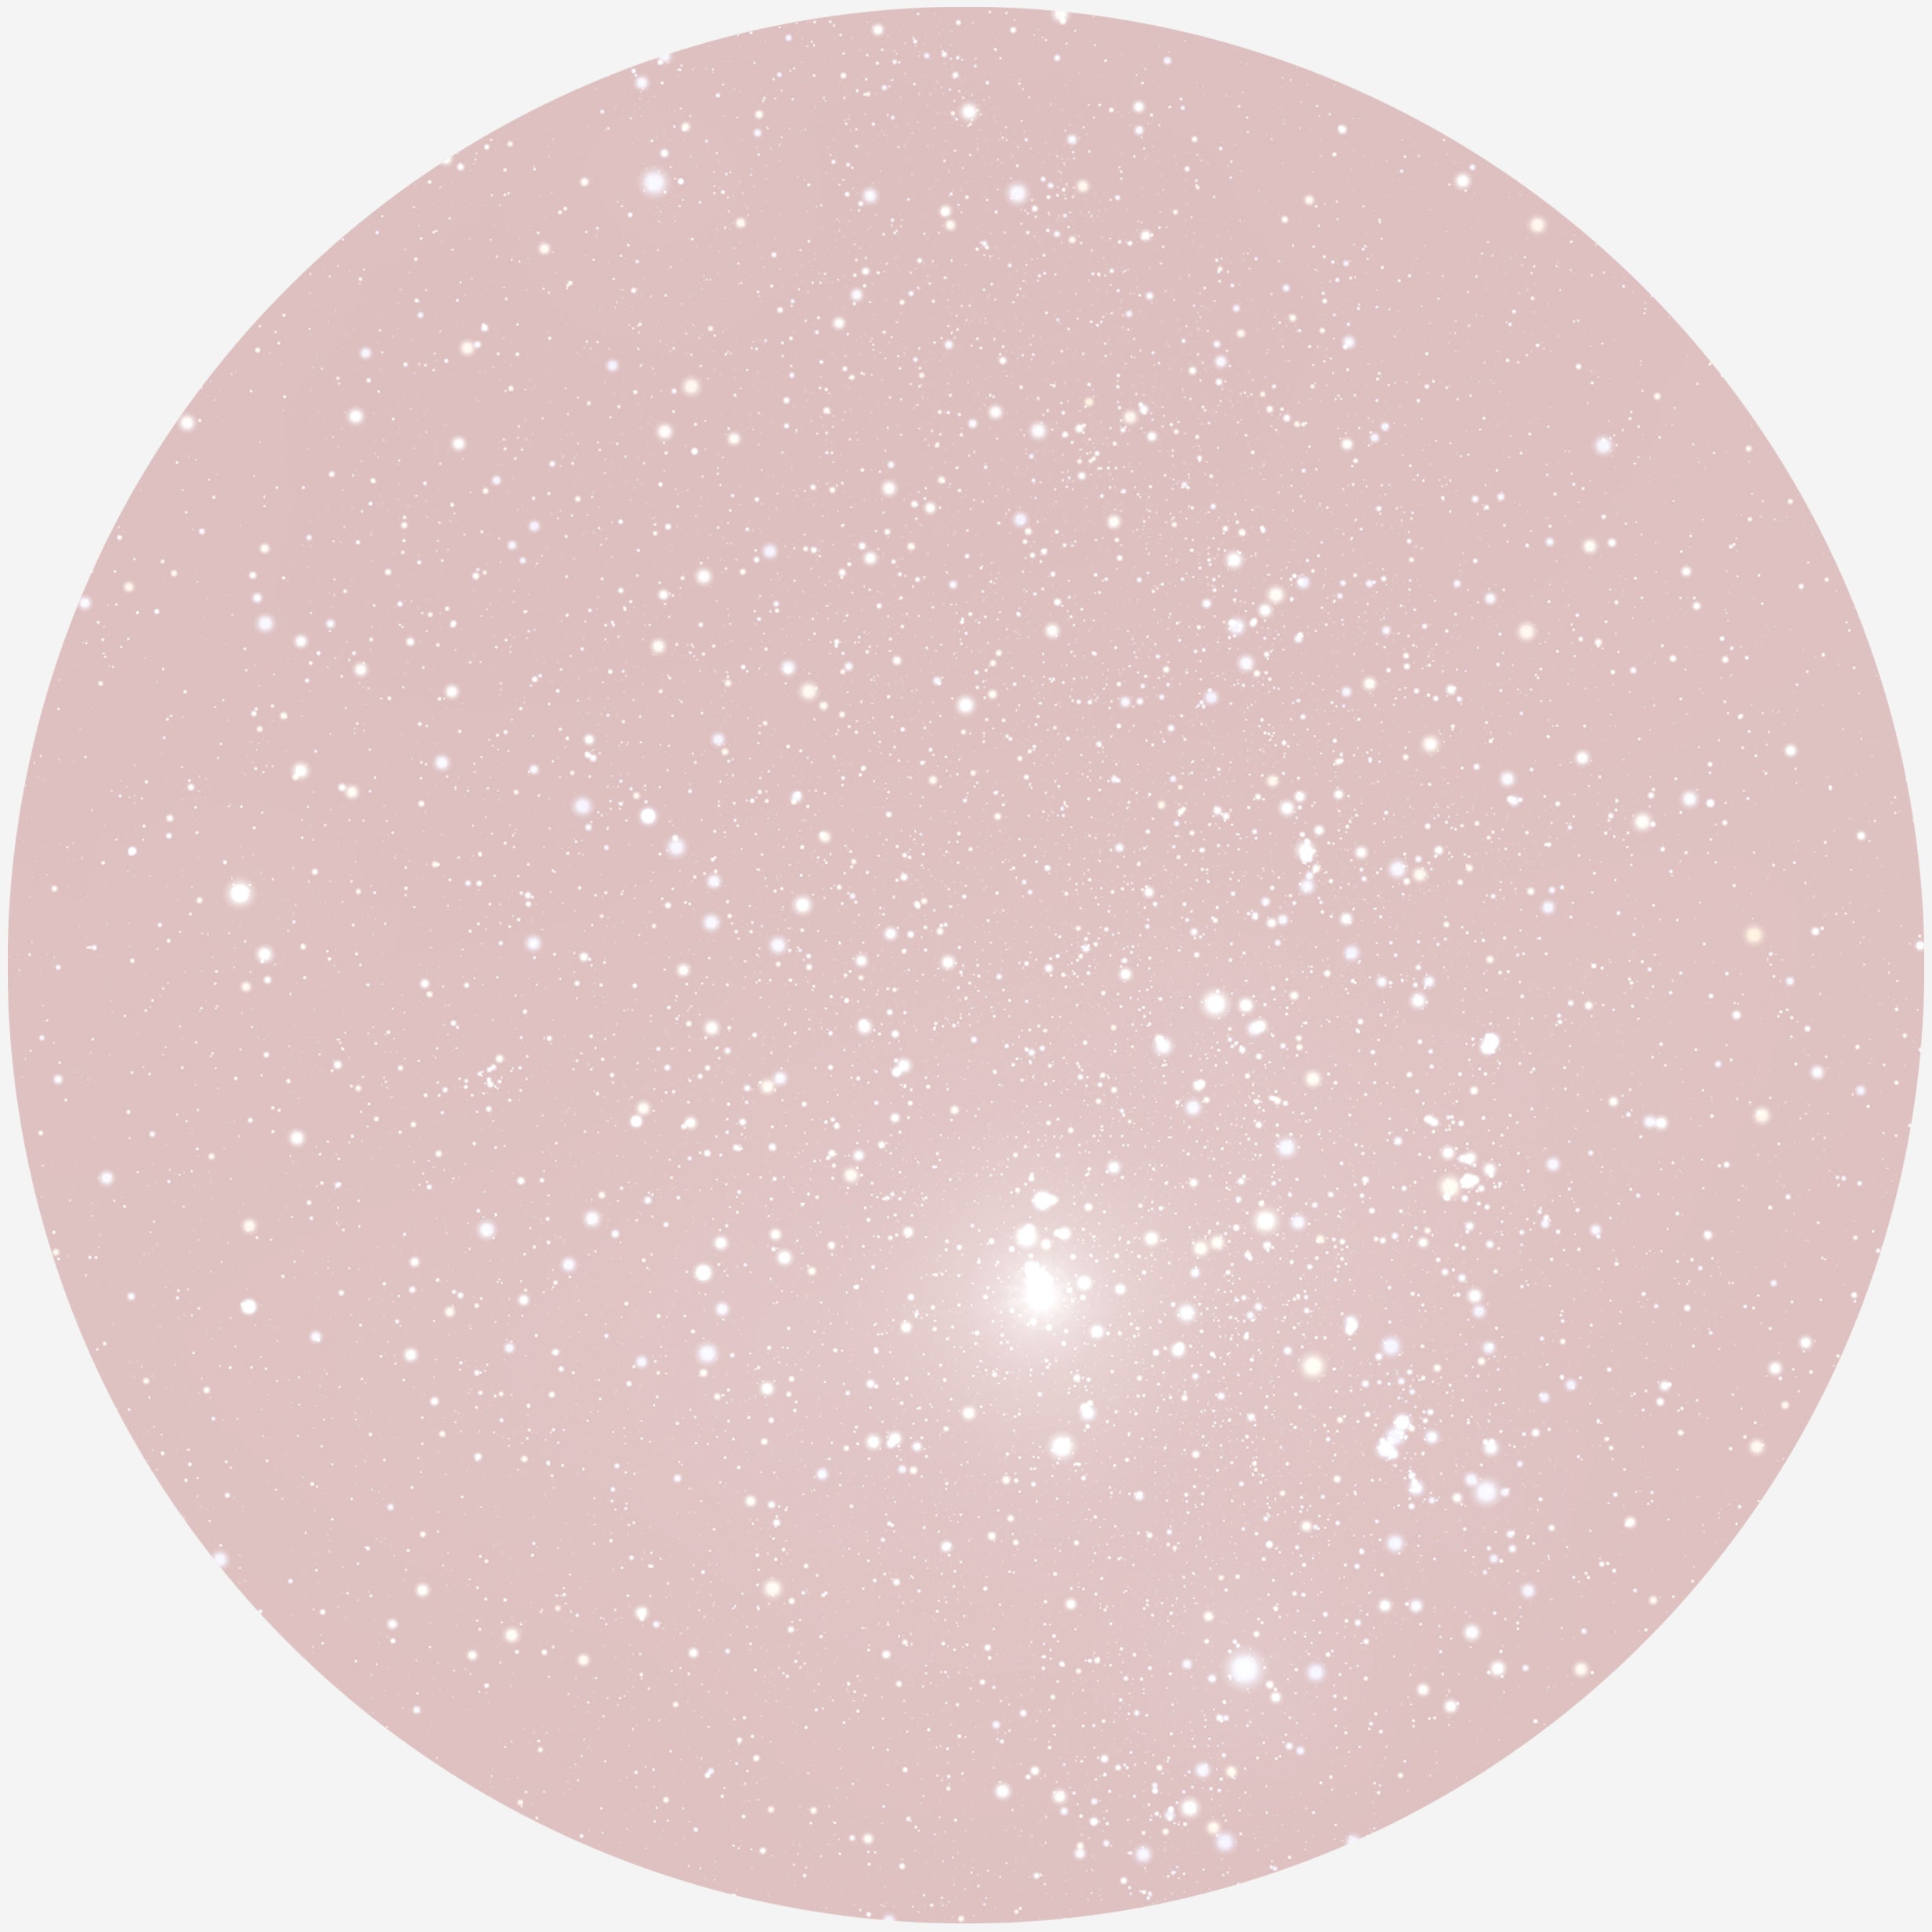 Billede af RUND PLAKAT MED PERSONLIG STJERNEHIMMEL (LYSERØD) - 20 cm / Klar stjernehimmel